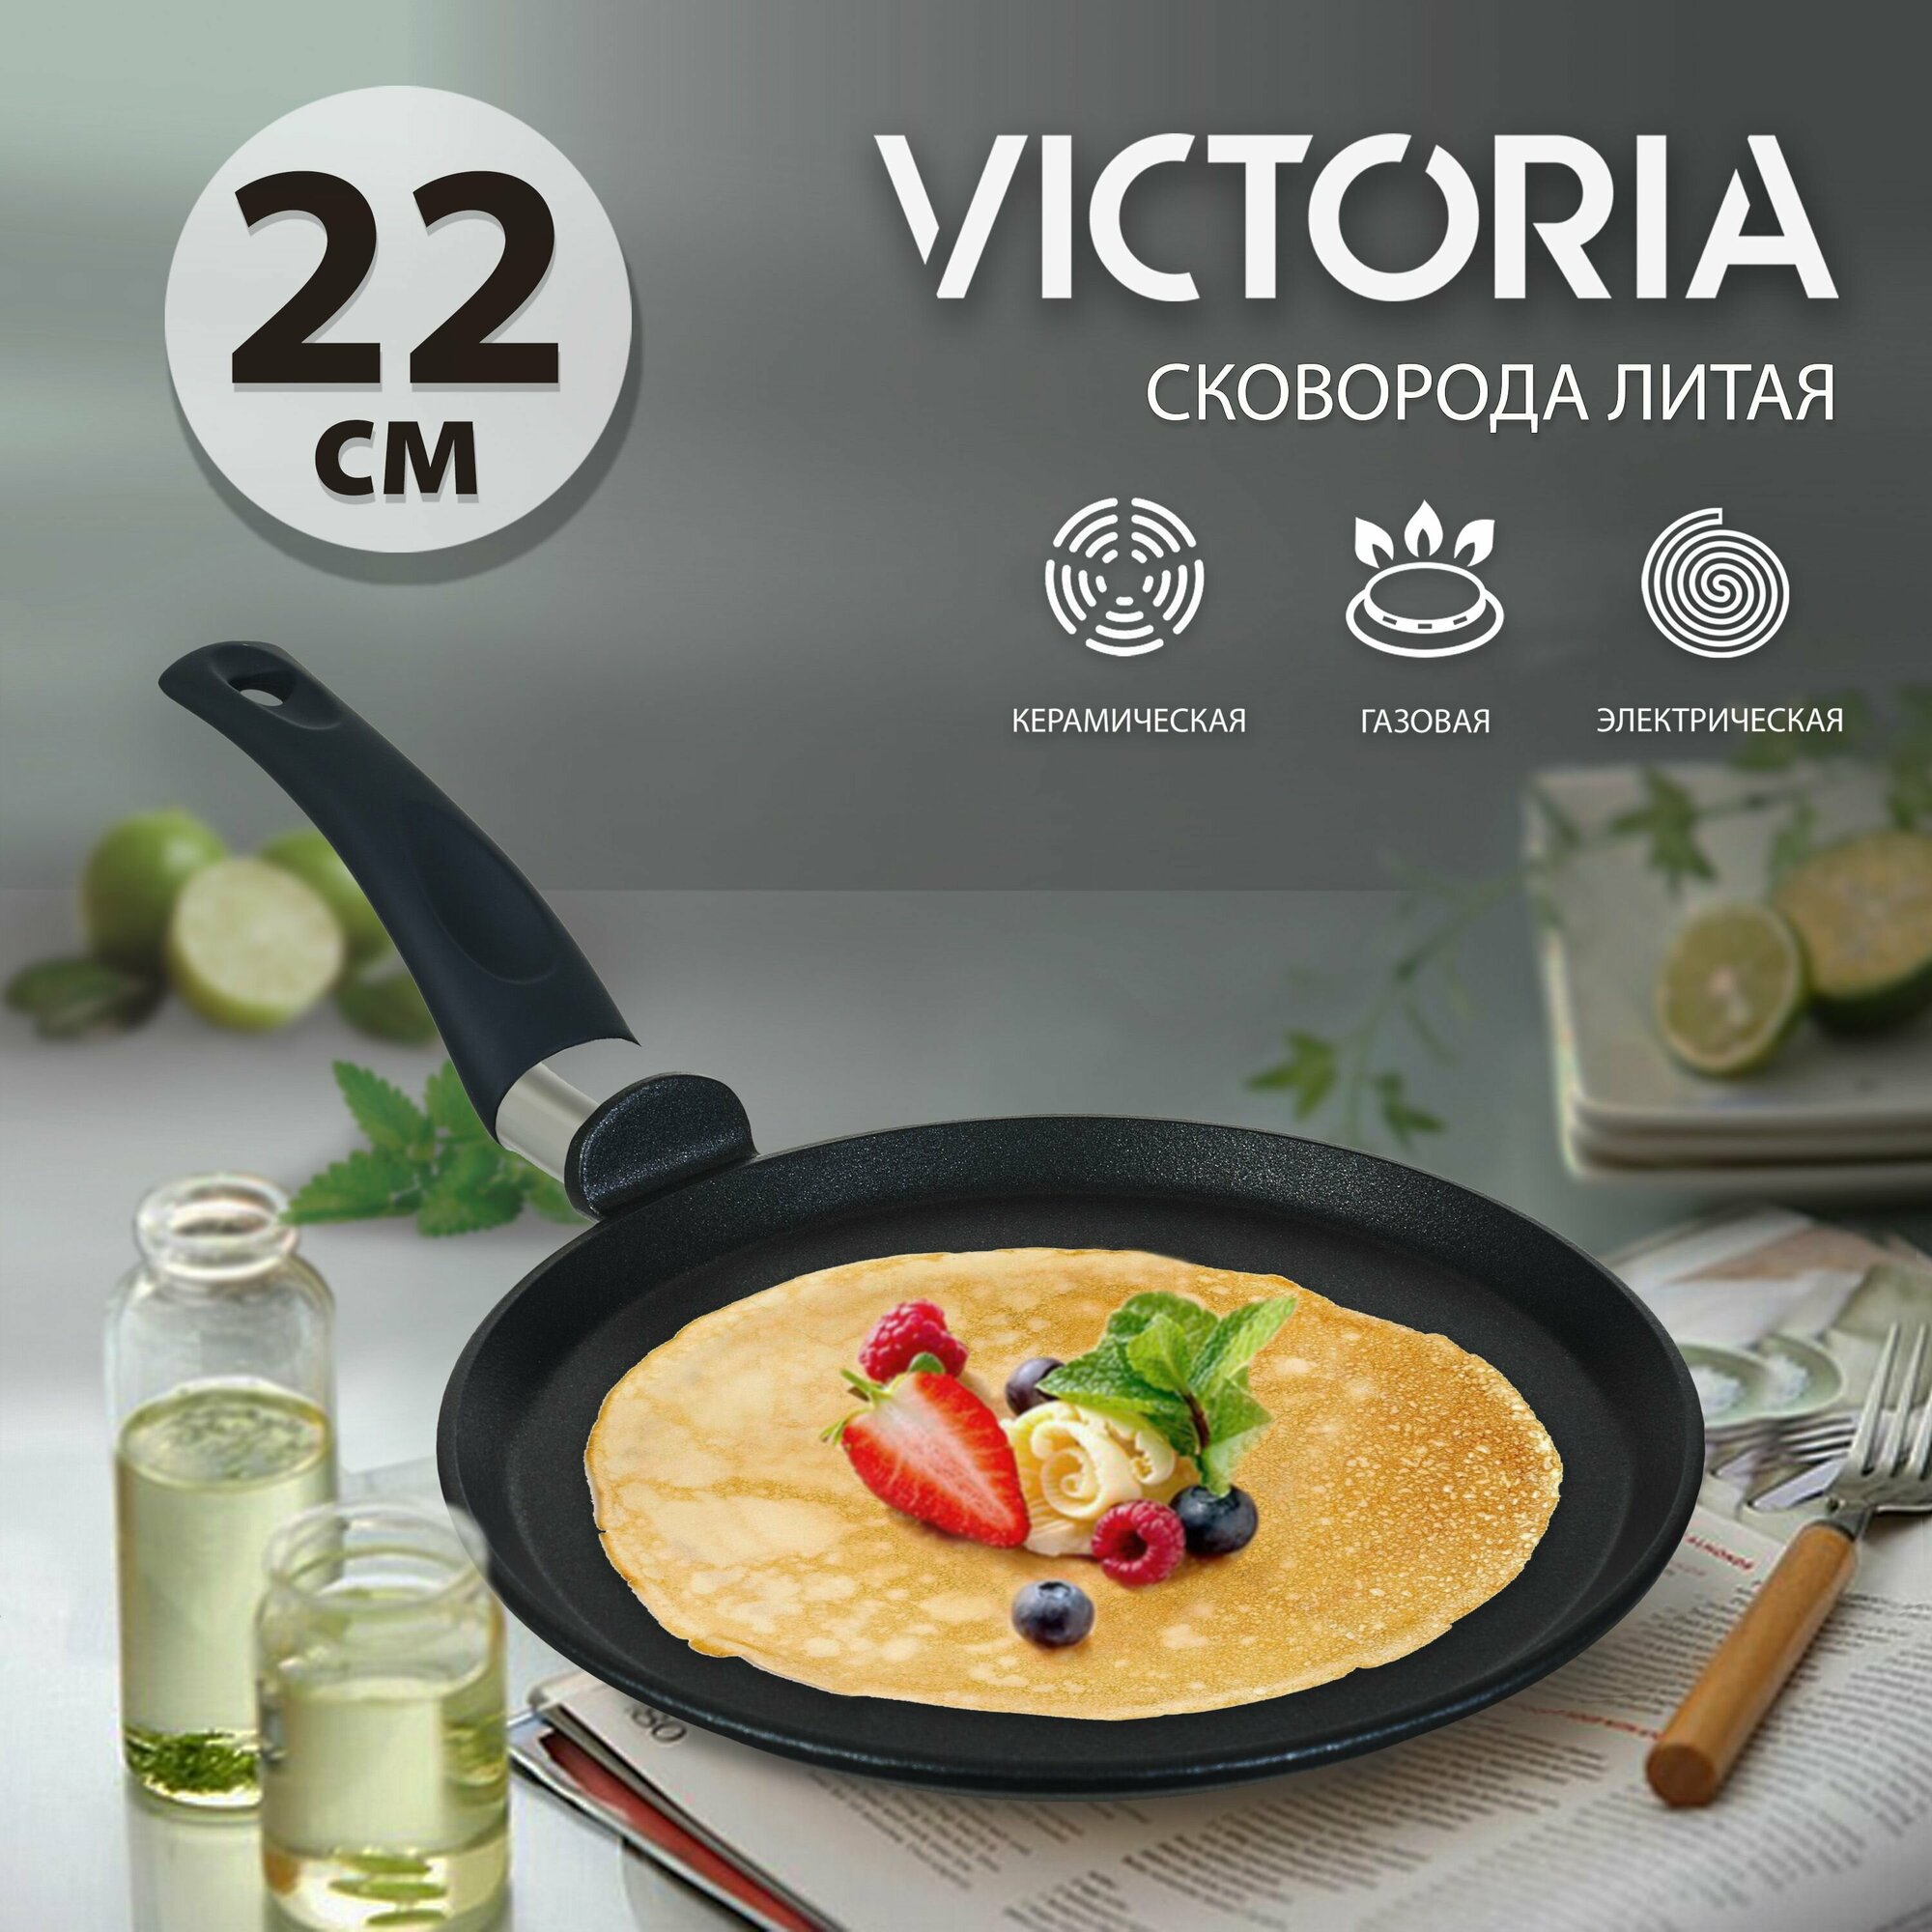 Сковорода блинная VICTORIA "Престиж" 22 см, черная